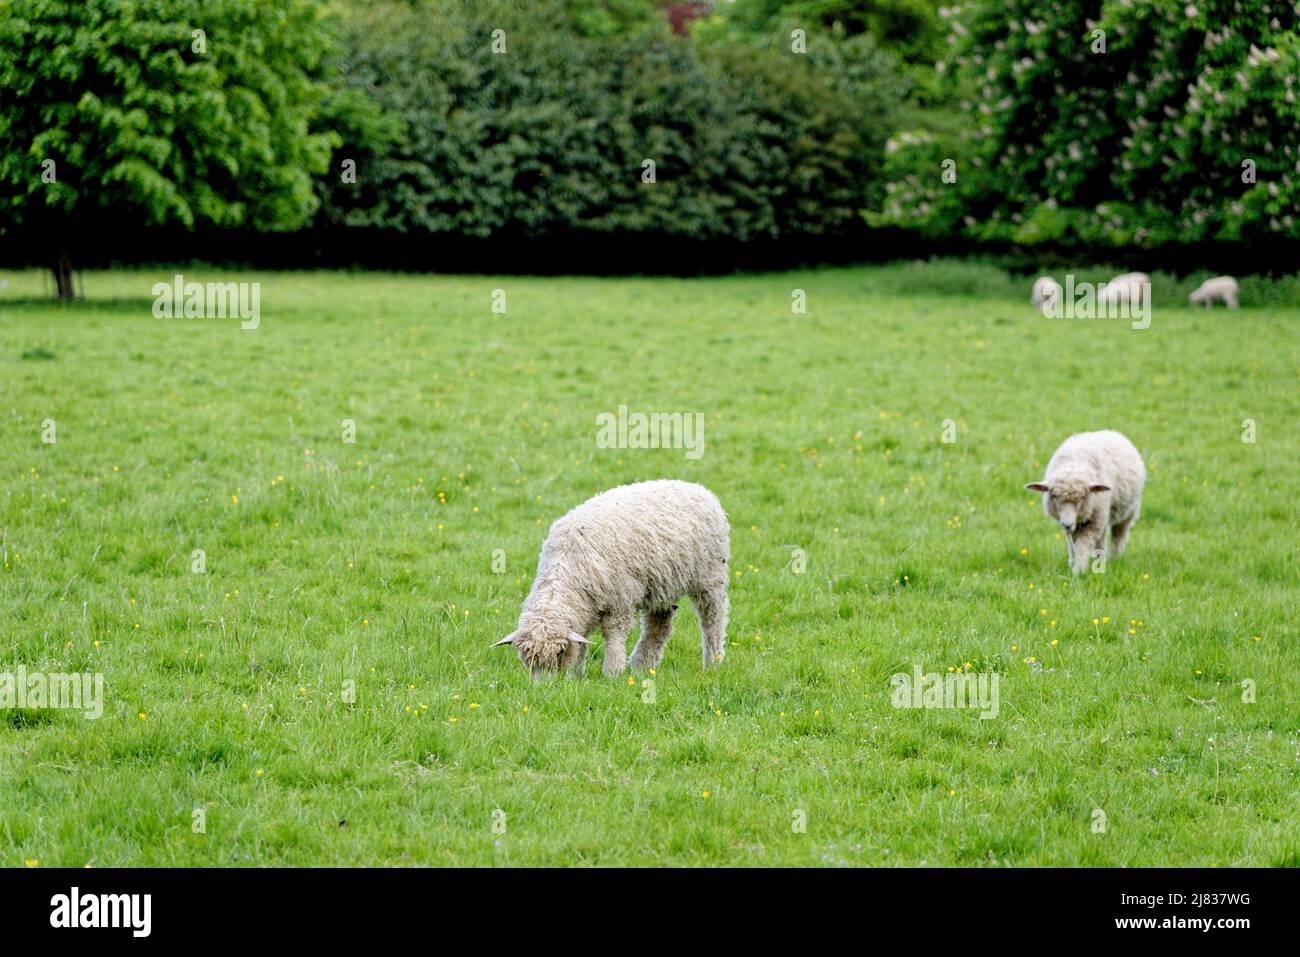 Schafe auf dem Feld - Bourton auf dem Wasser, Gloucestershire, England, Vereinigtes Königreich Stockfoto